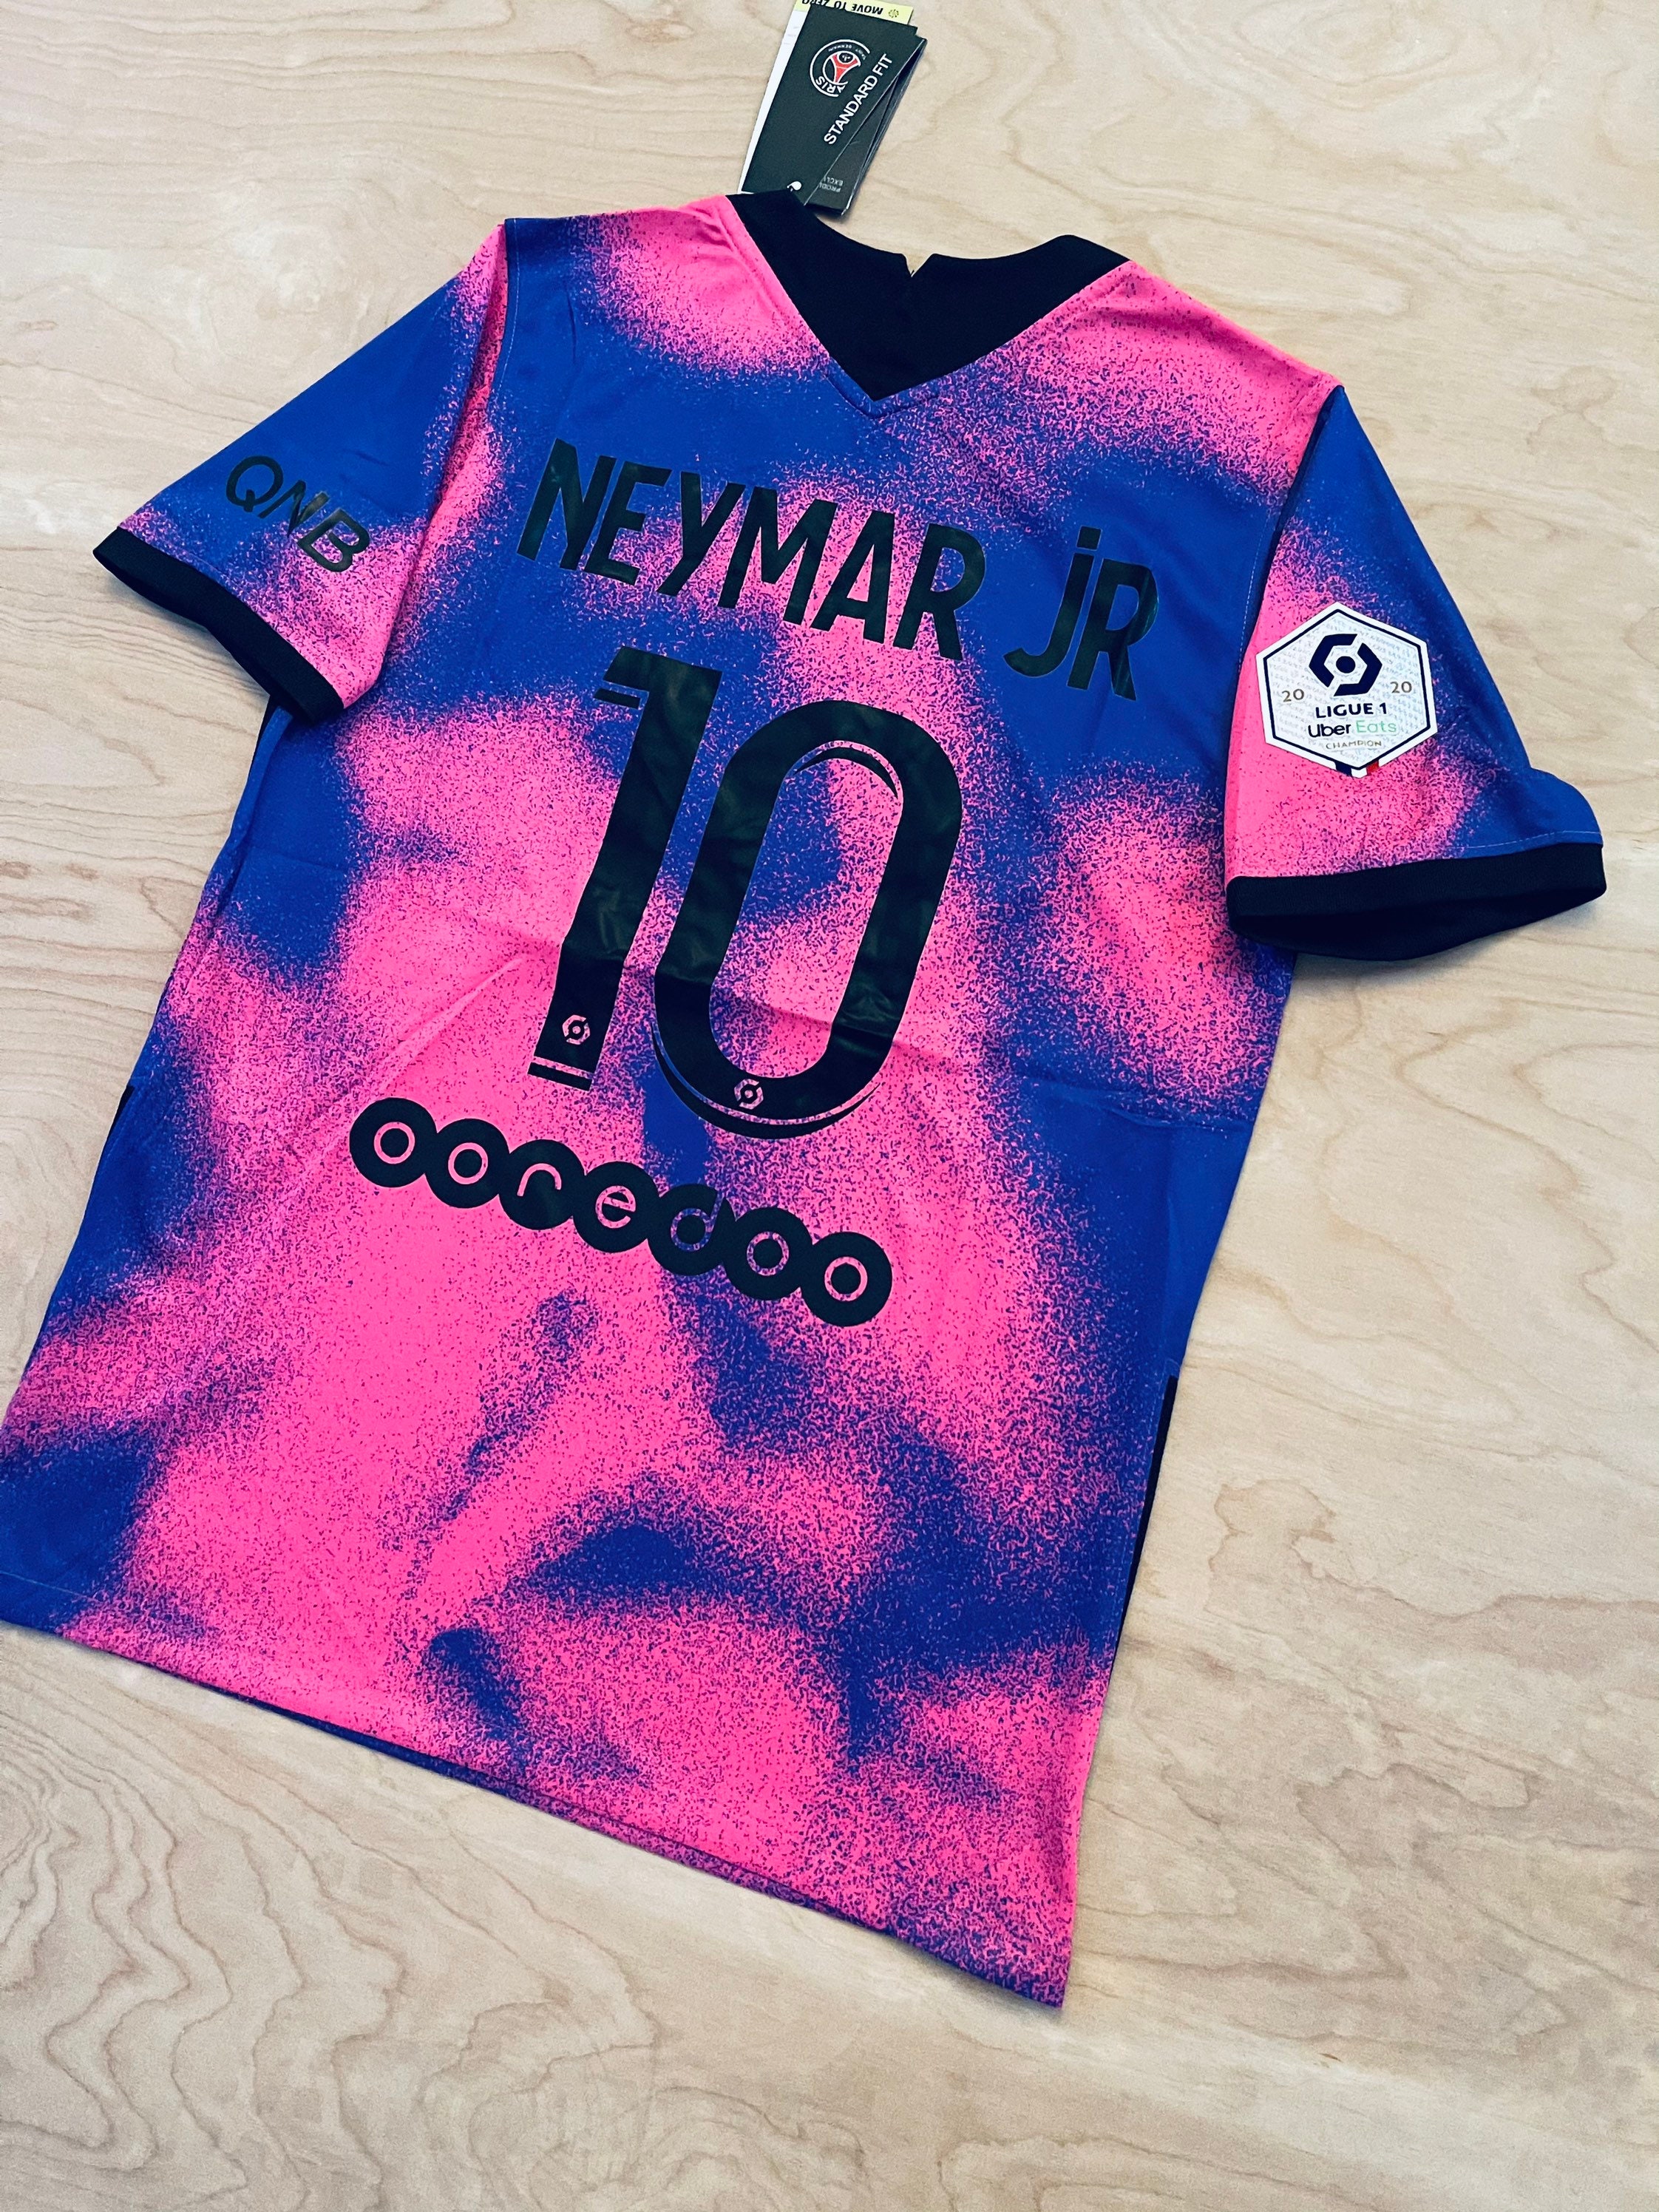 Neymar Jr 10 PSG Jordan edition soccer jersey 20/21  Etsy